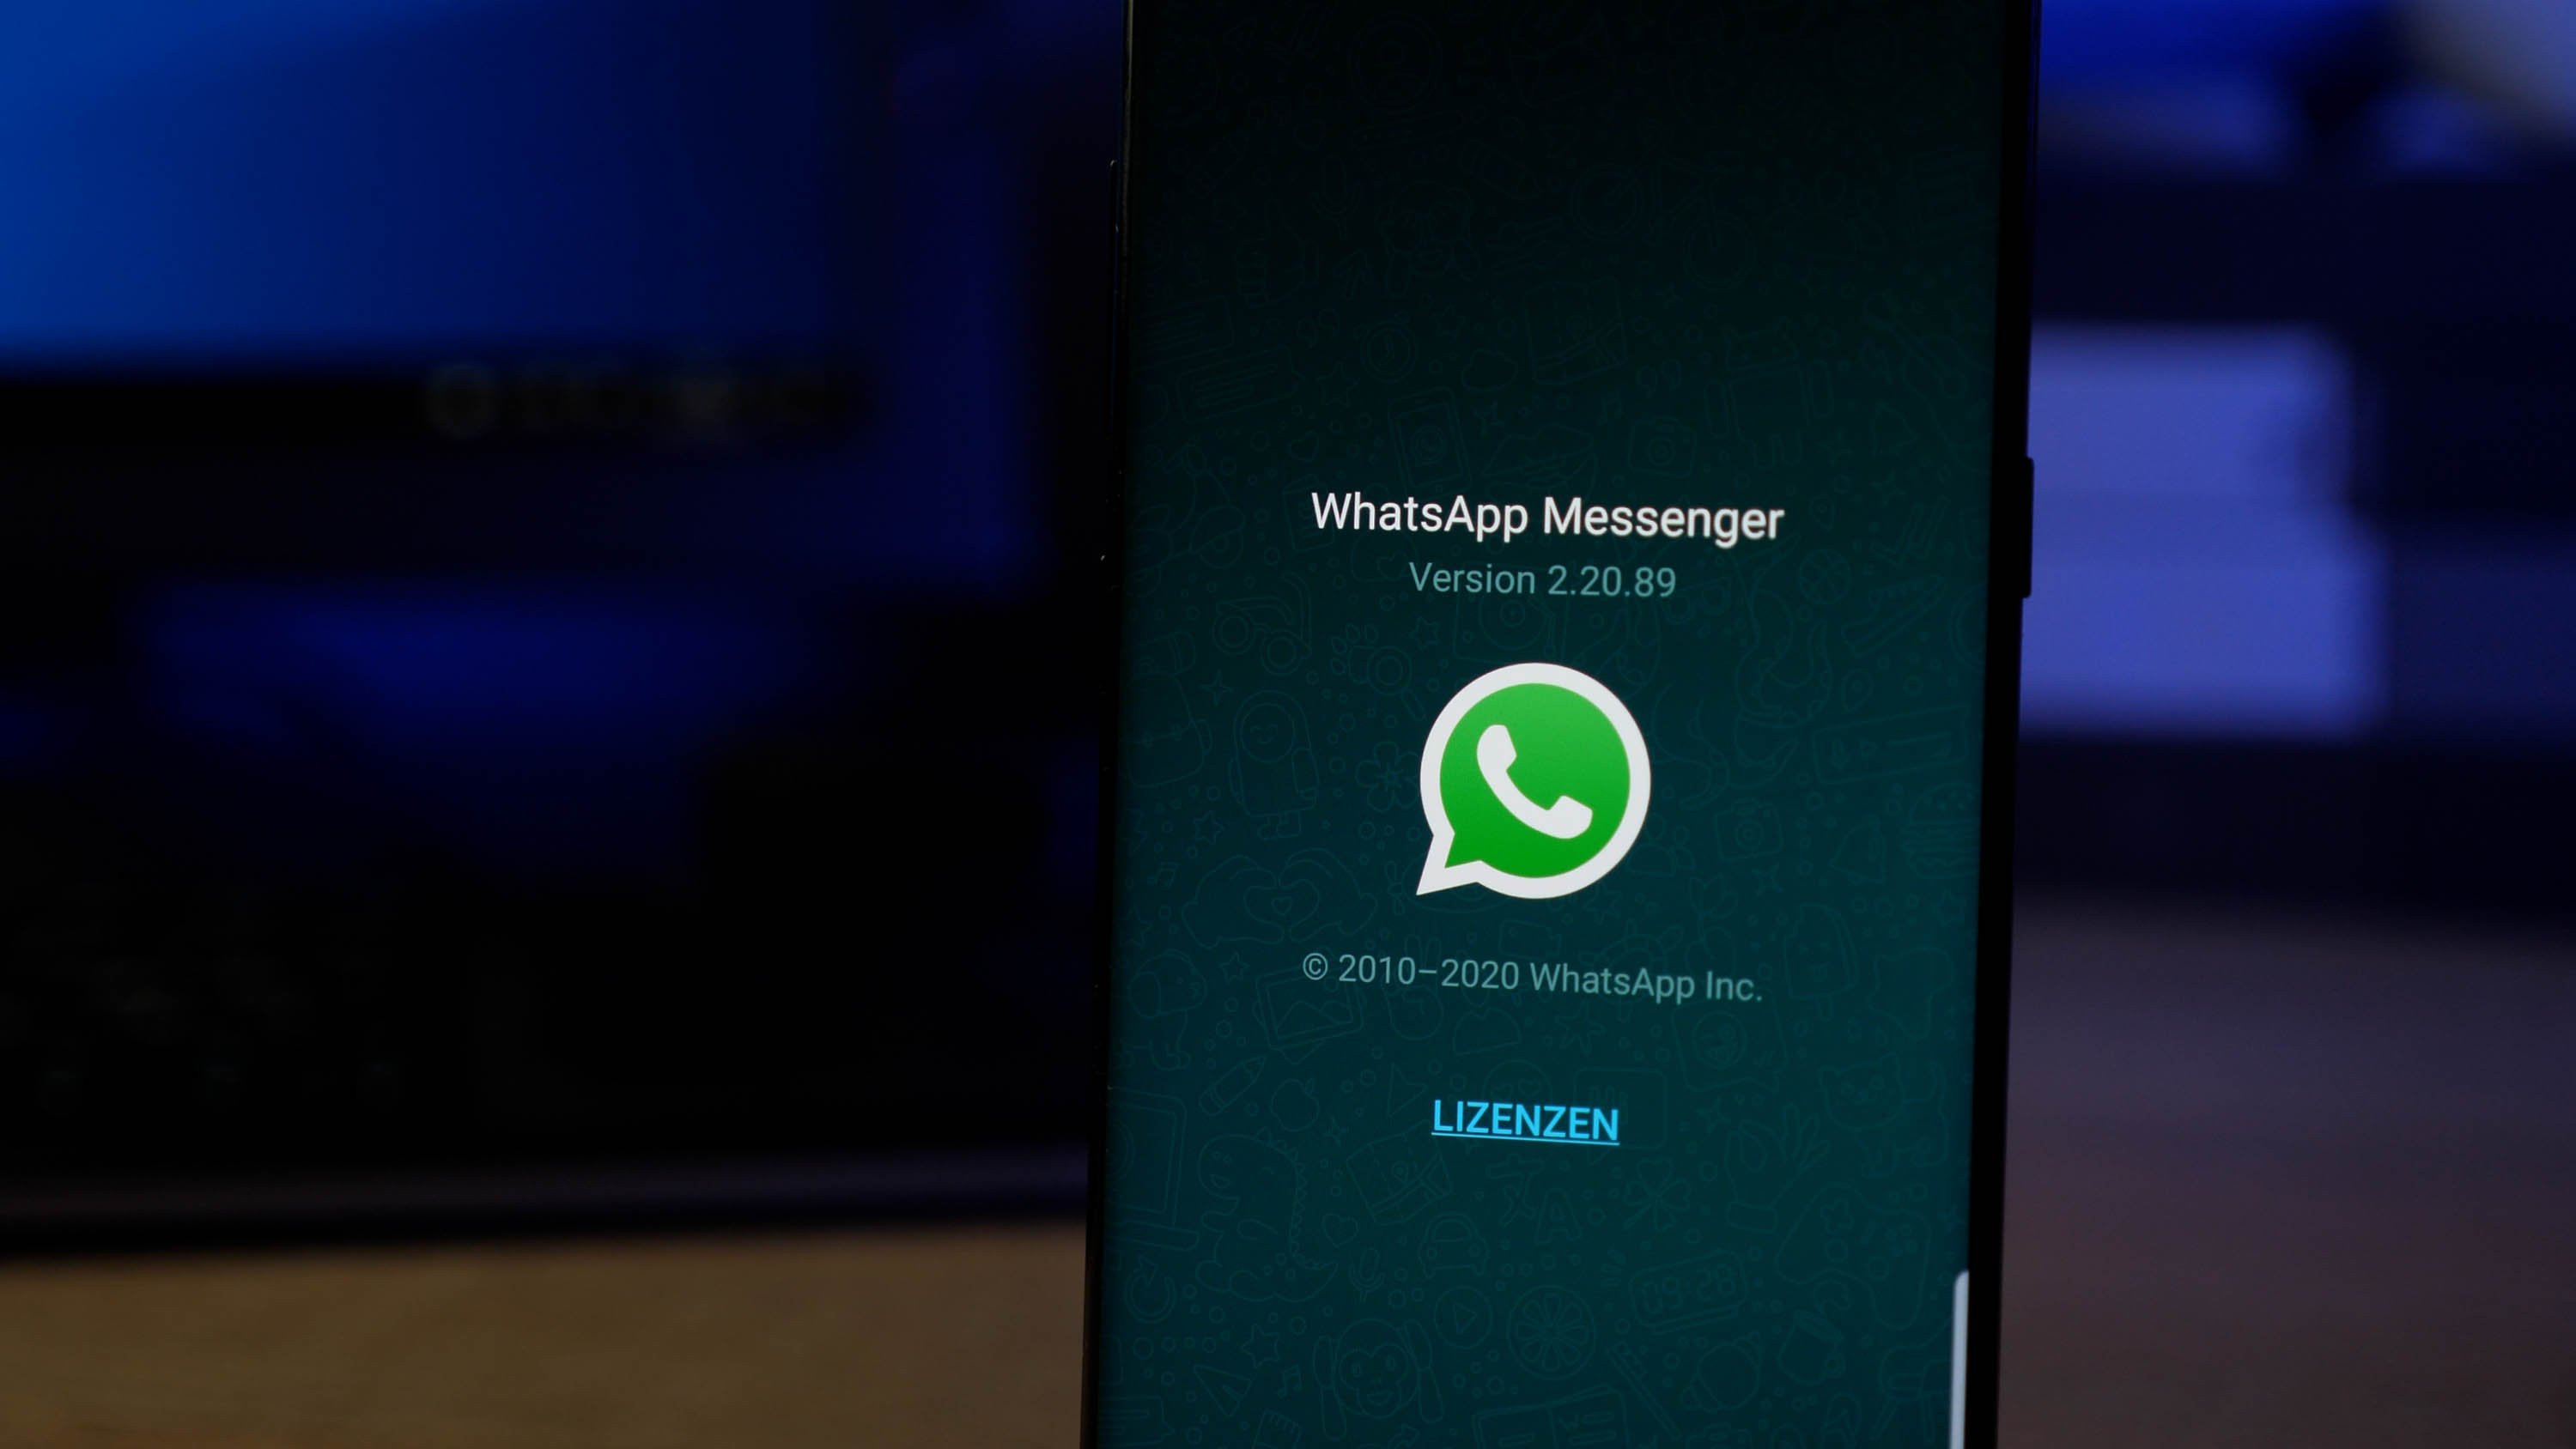 Whatsapp-Sticker erstellen: So geht's für iPhone und Android-Smartphone -  PC-WELT